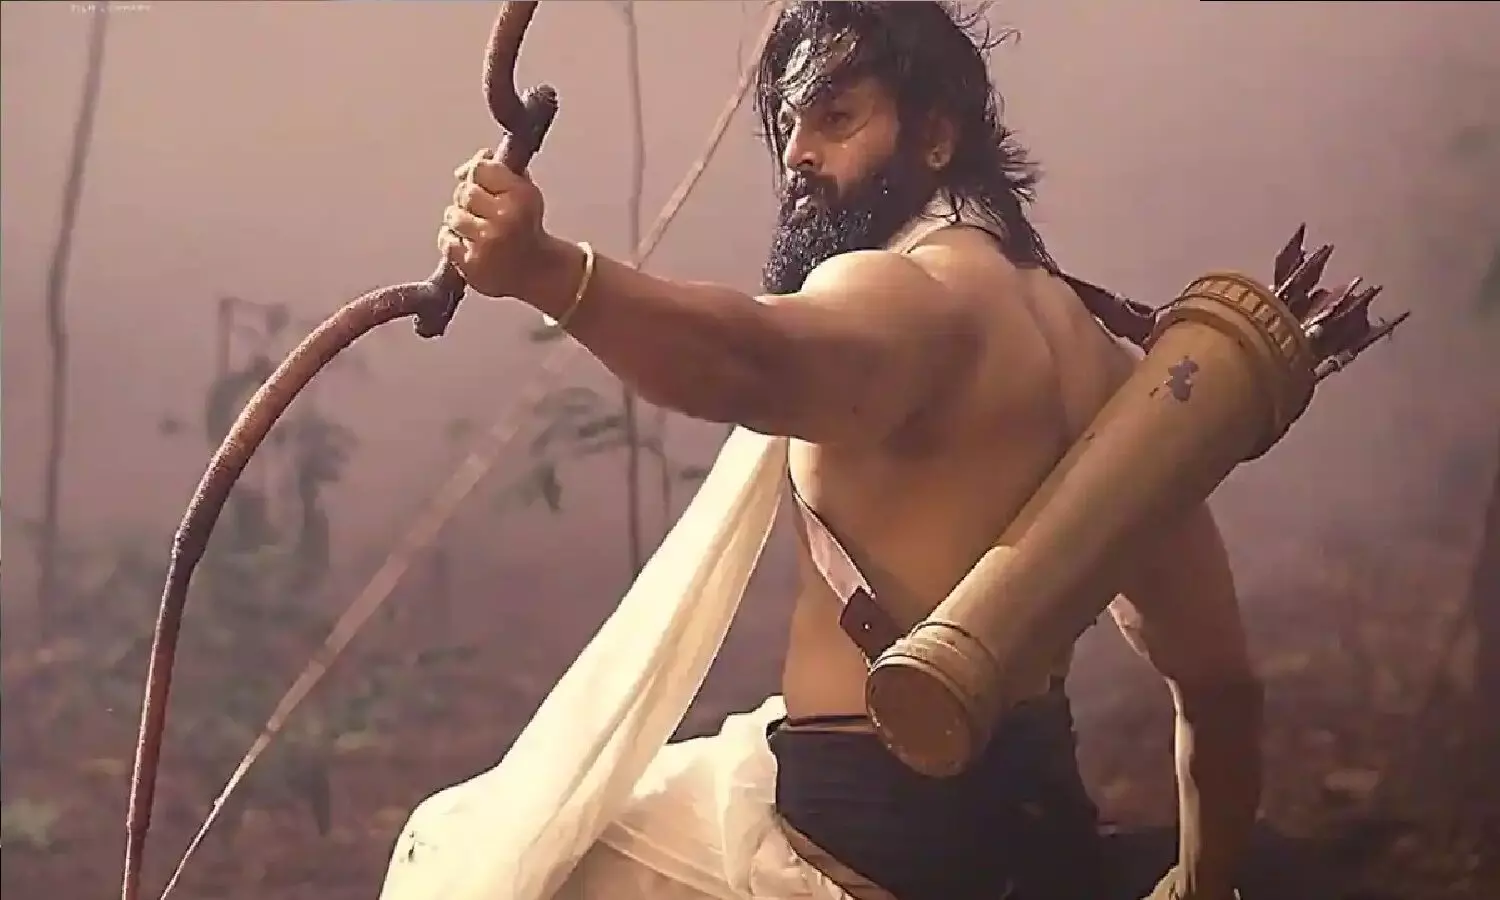 भगवान अयप्पा पर बनी फिल्म मलिकप्पुरम को लोग दूसरी कांतारा क्यों कह रहे?